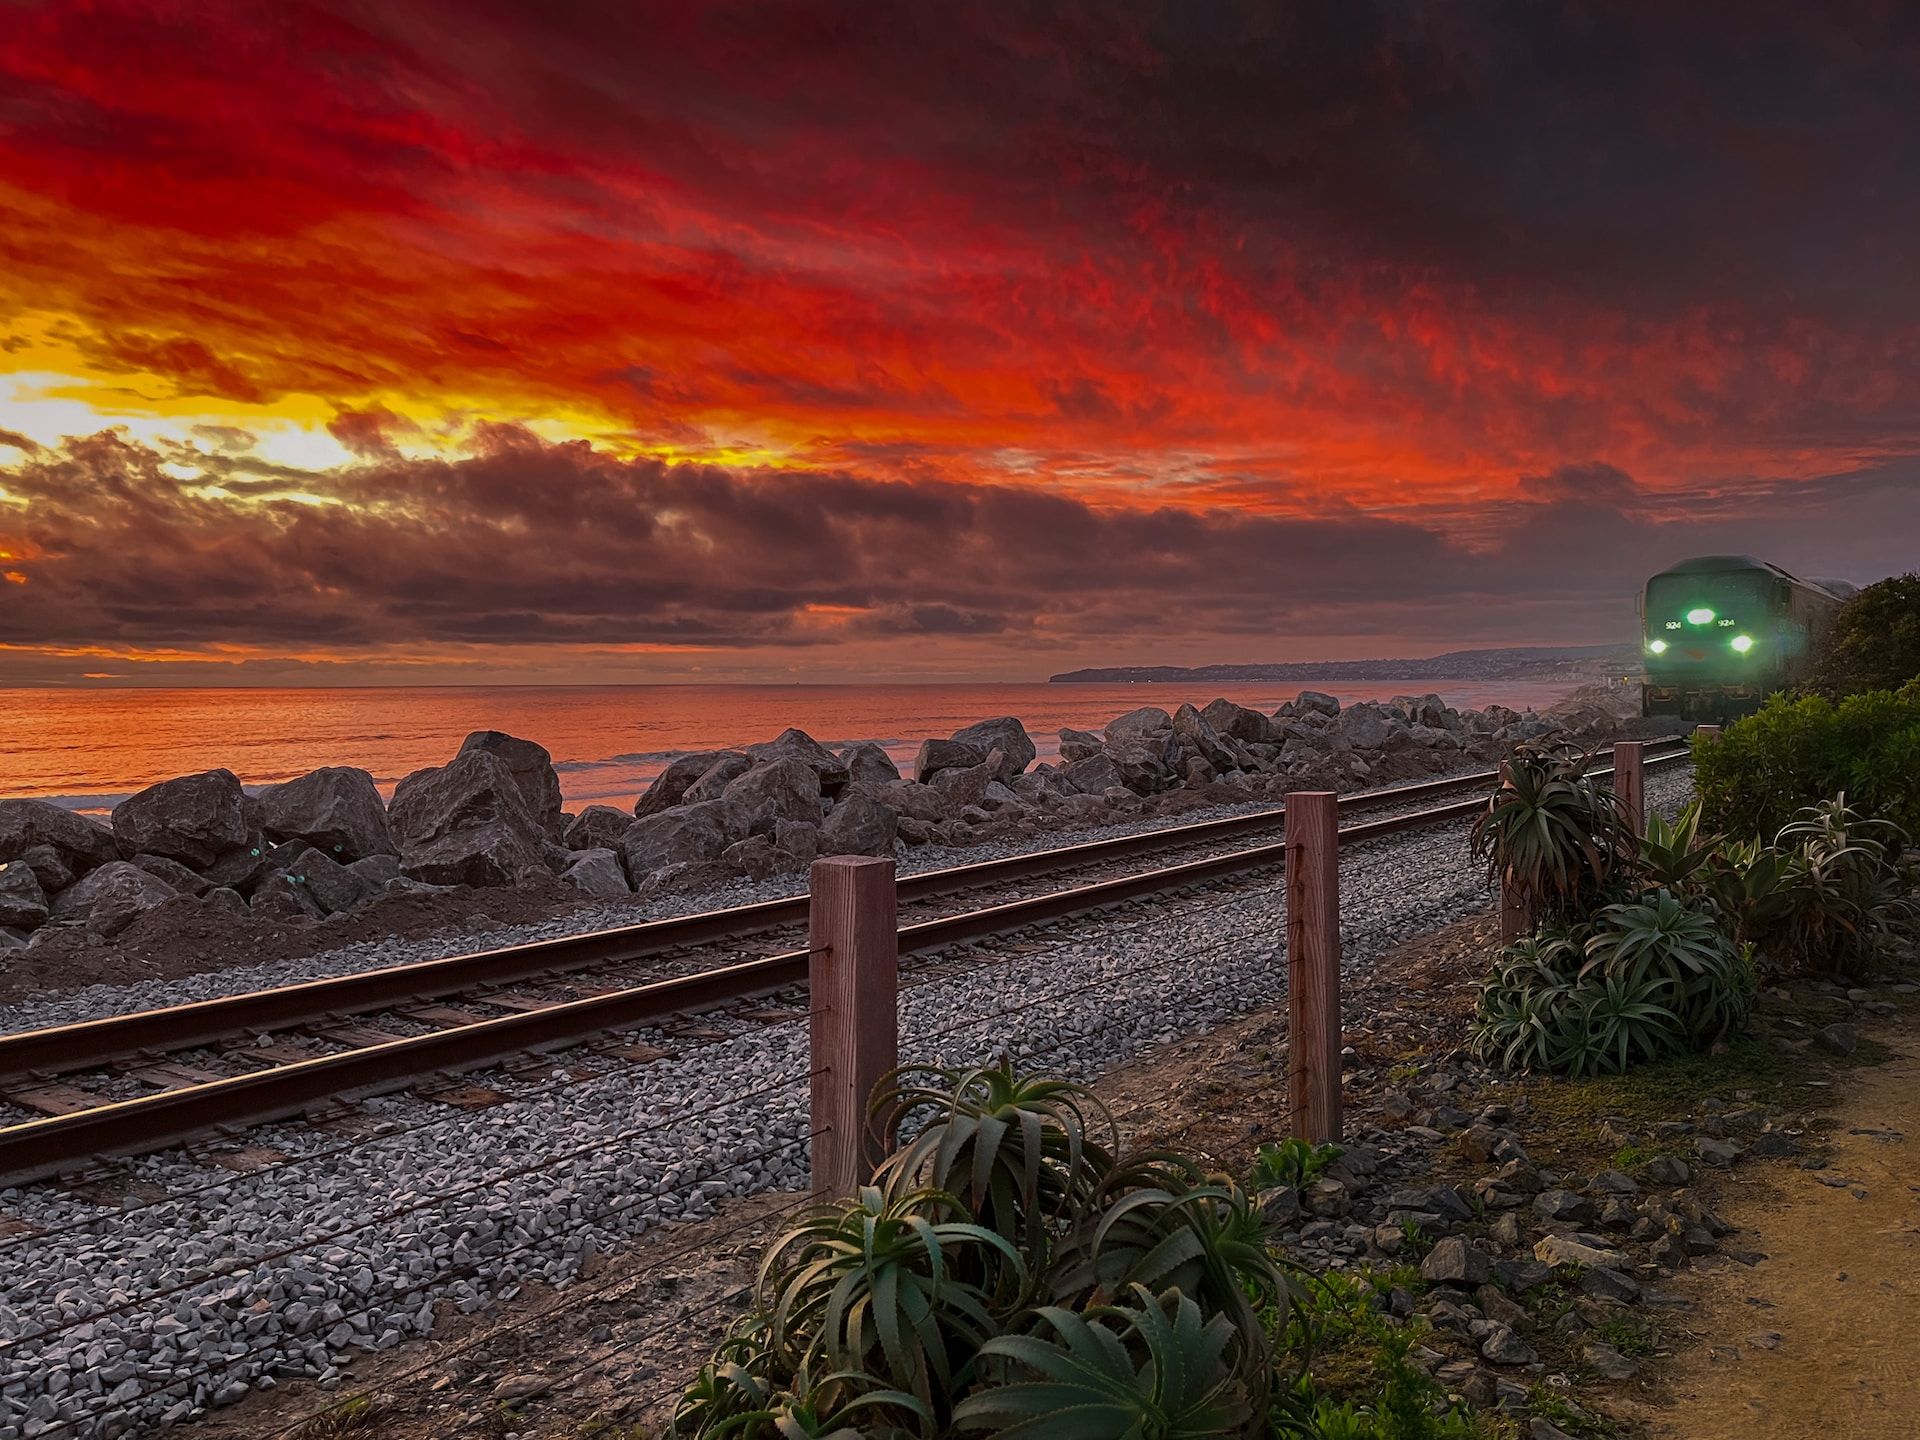 Amtrak Surfiliner route along San Clemente